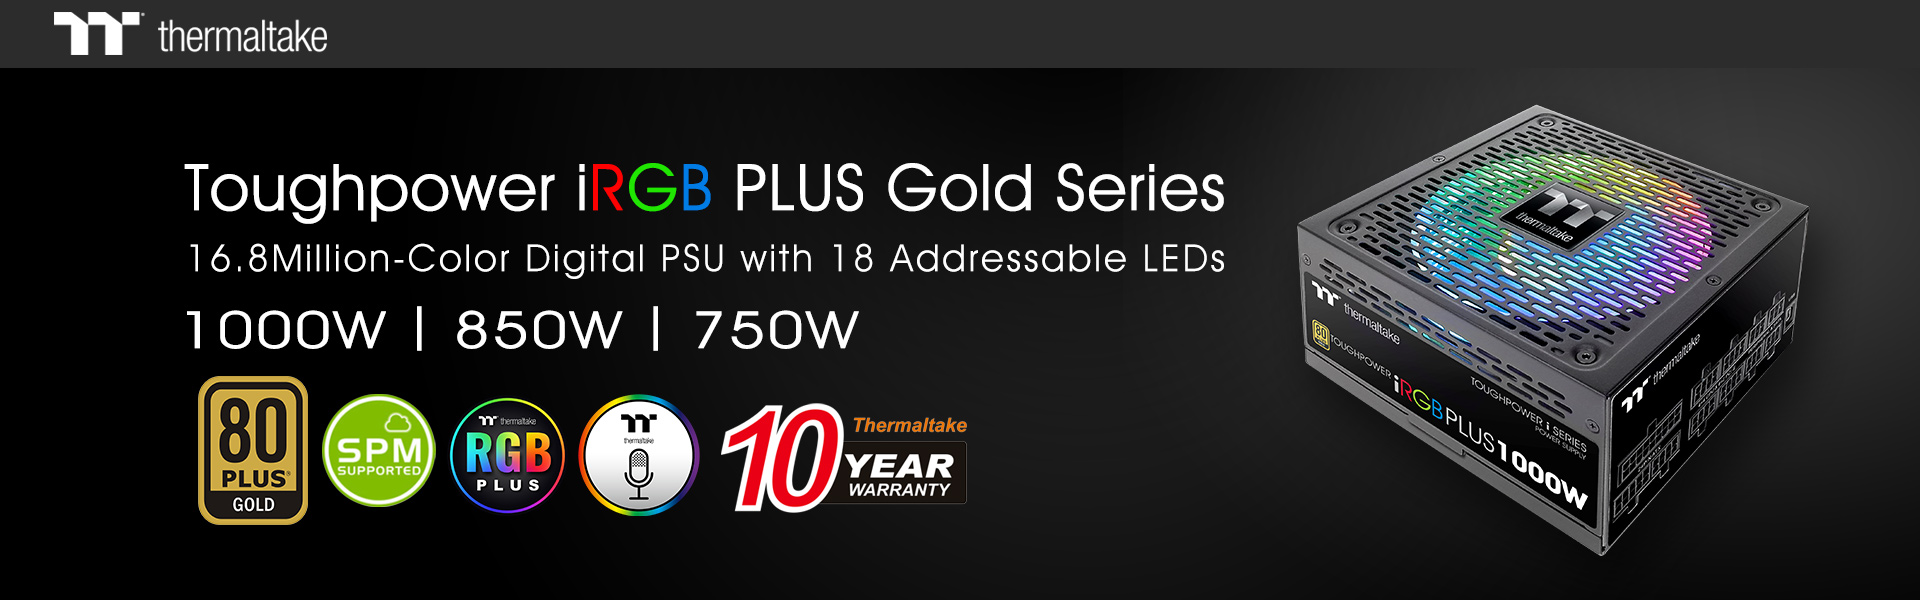 Thermaltake New Toughpower iRGB PLUS Gold Series 1